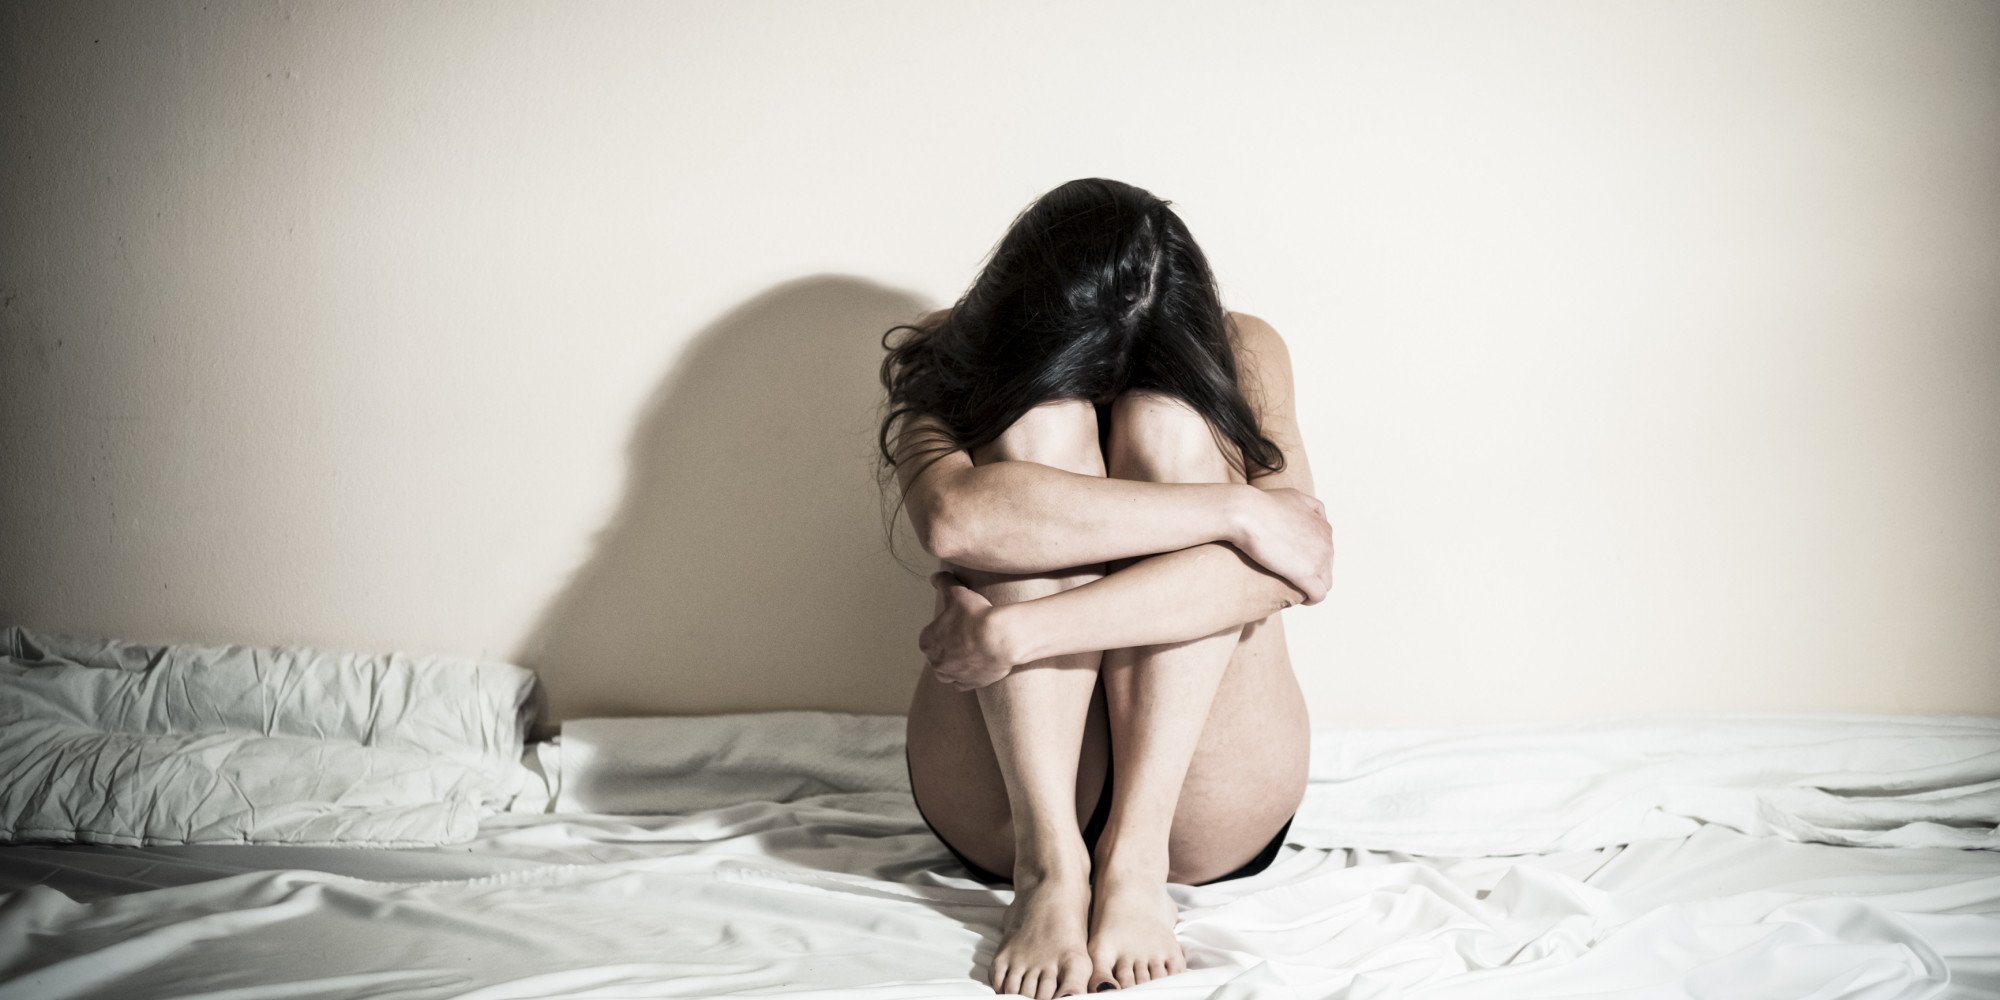 ७ वर्षअघि बलात्कृत भएको भन्दै अर्की युवती बोलिन्, स्कुलका प्रिन्सिपलमाथि आरोप